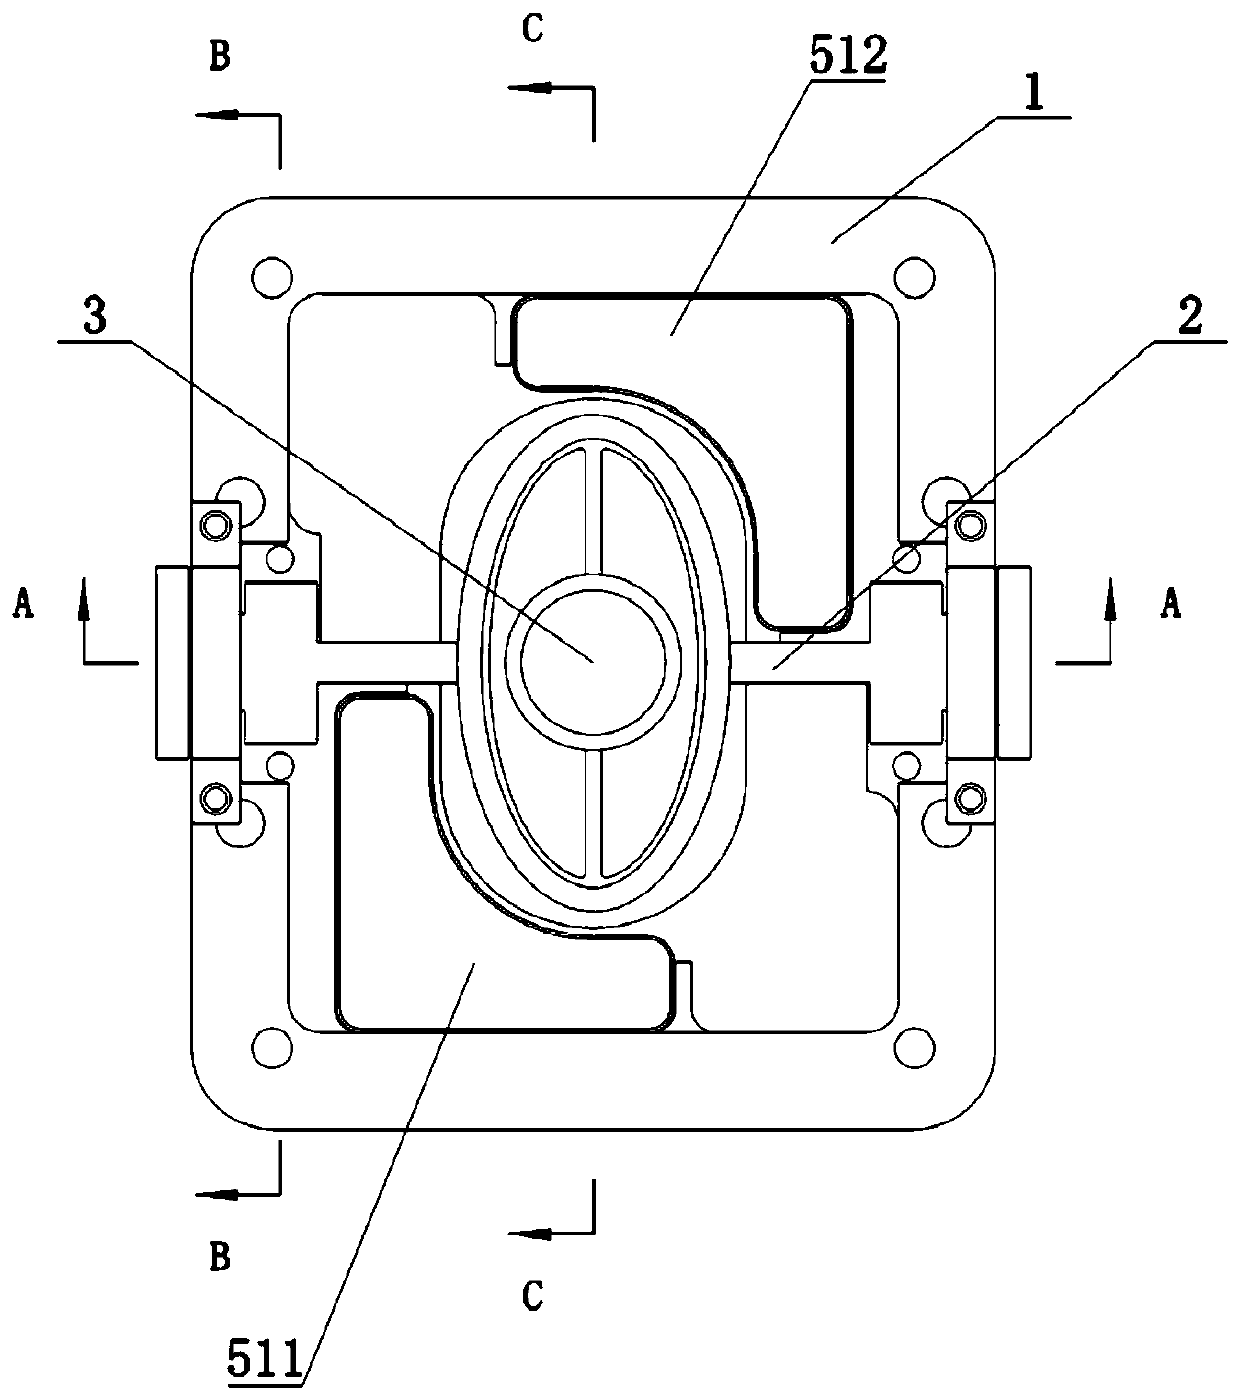 Biaxial galvanometer